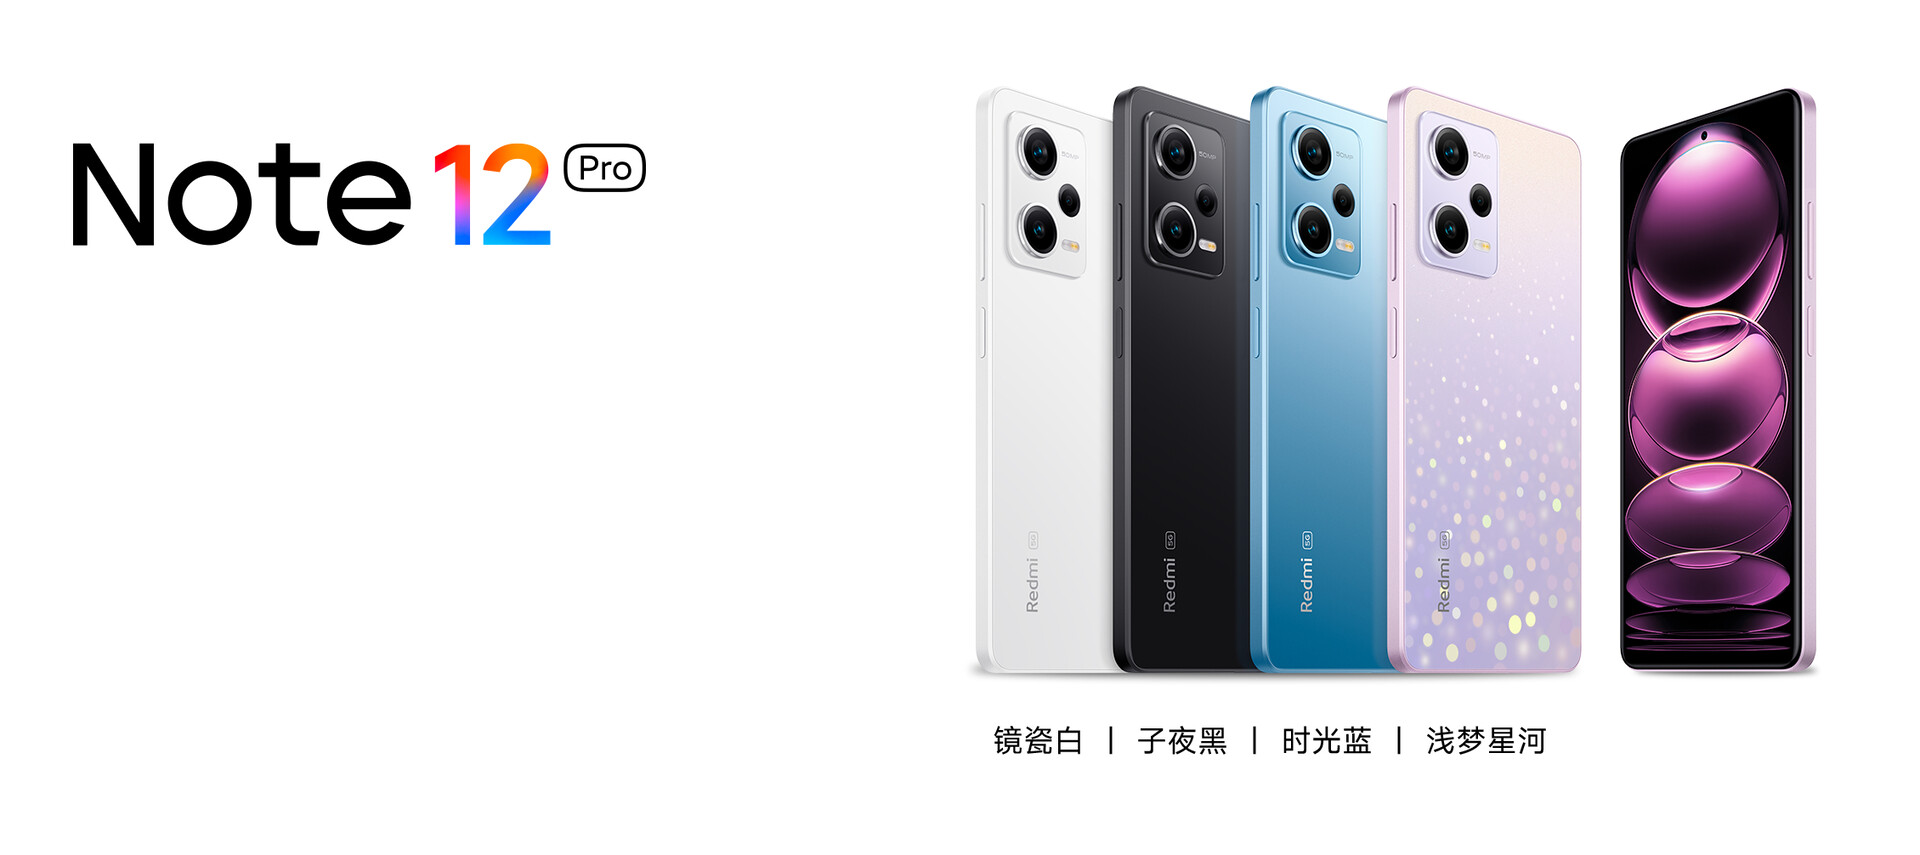 Le smartphone Xiaomi Redmi Note 12, numéro 1 des ventes sur , est à  moins de